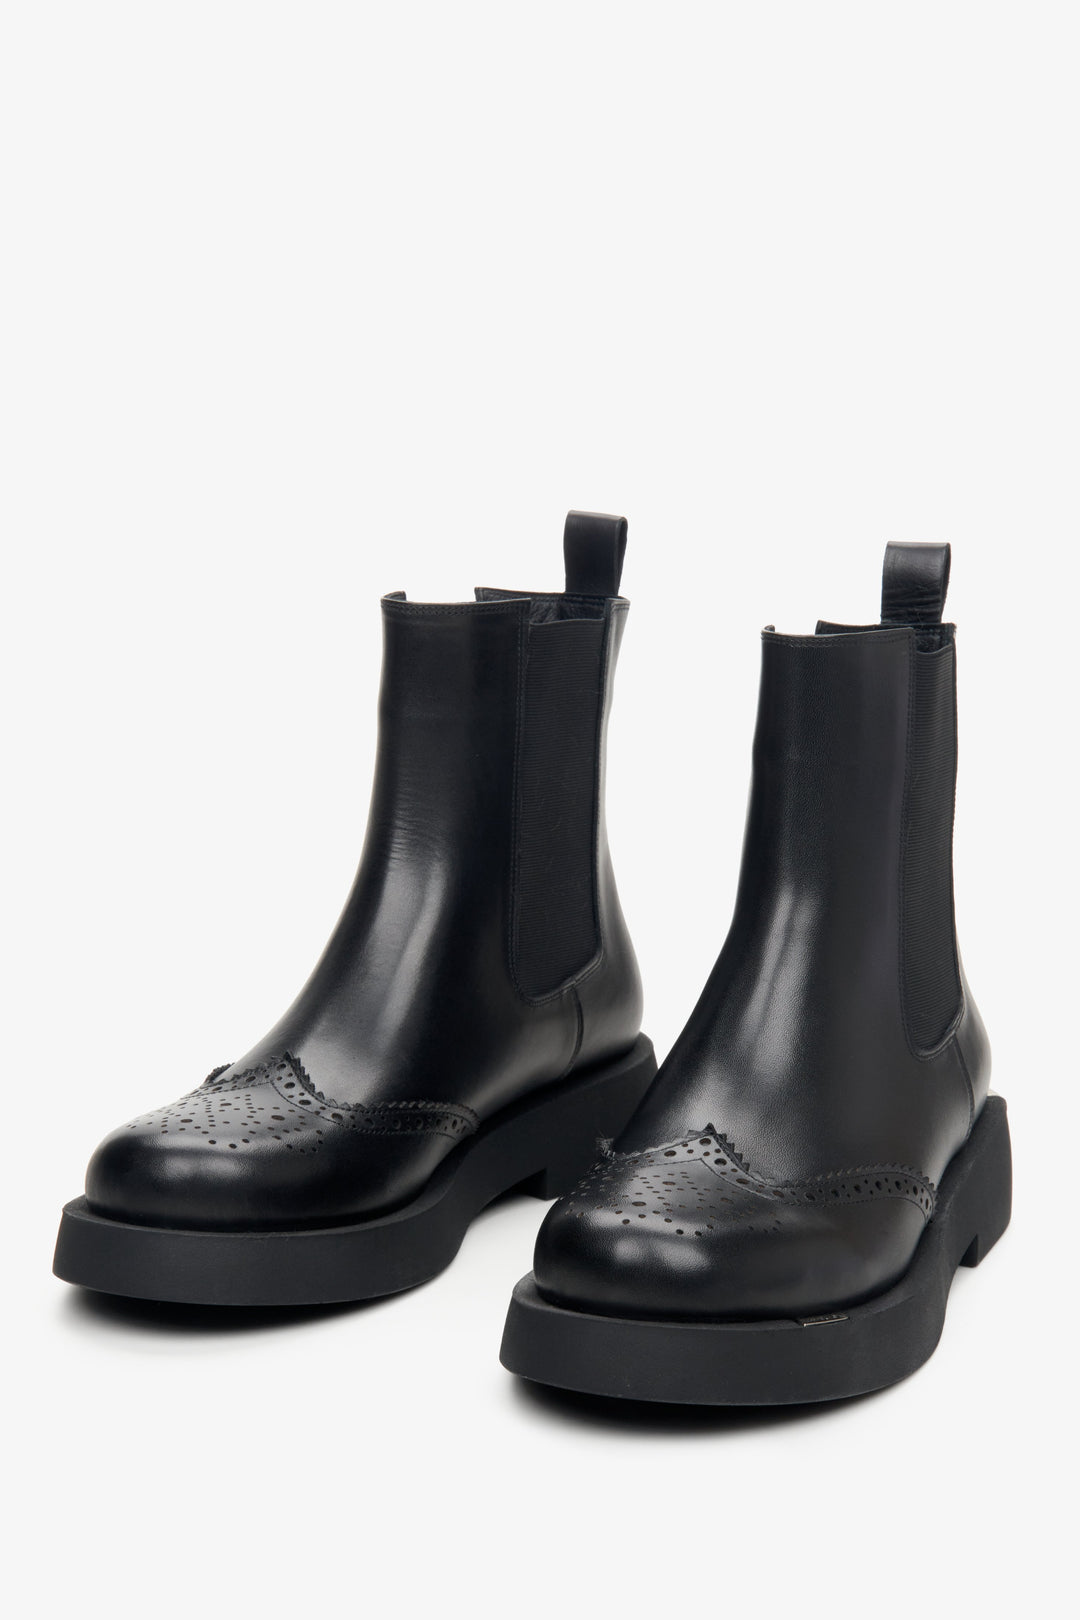 Skórzane sztyblety damskie Estro w kolorze czarnym - zbliżenie na czubek butów.